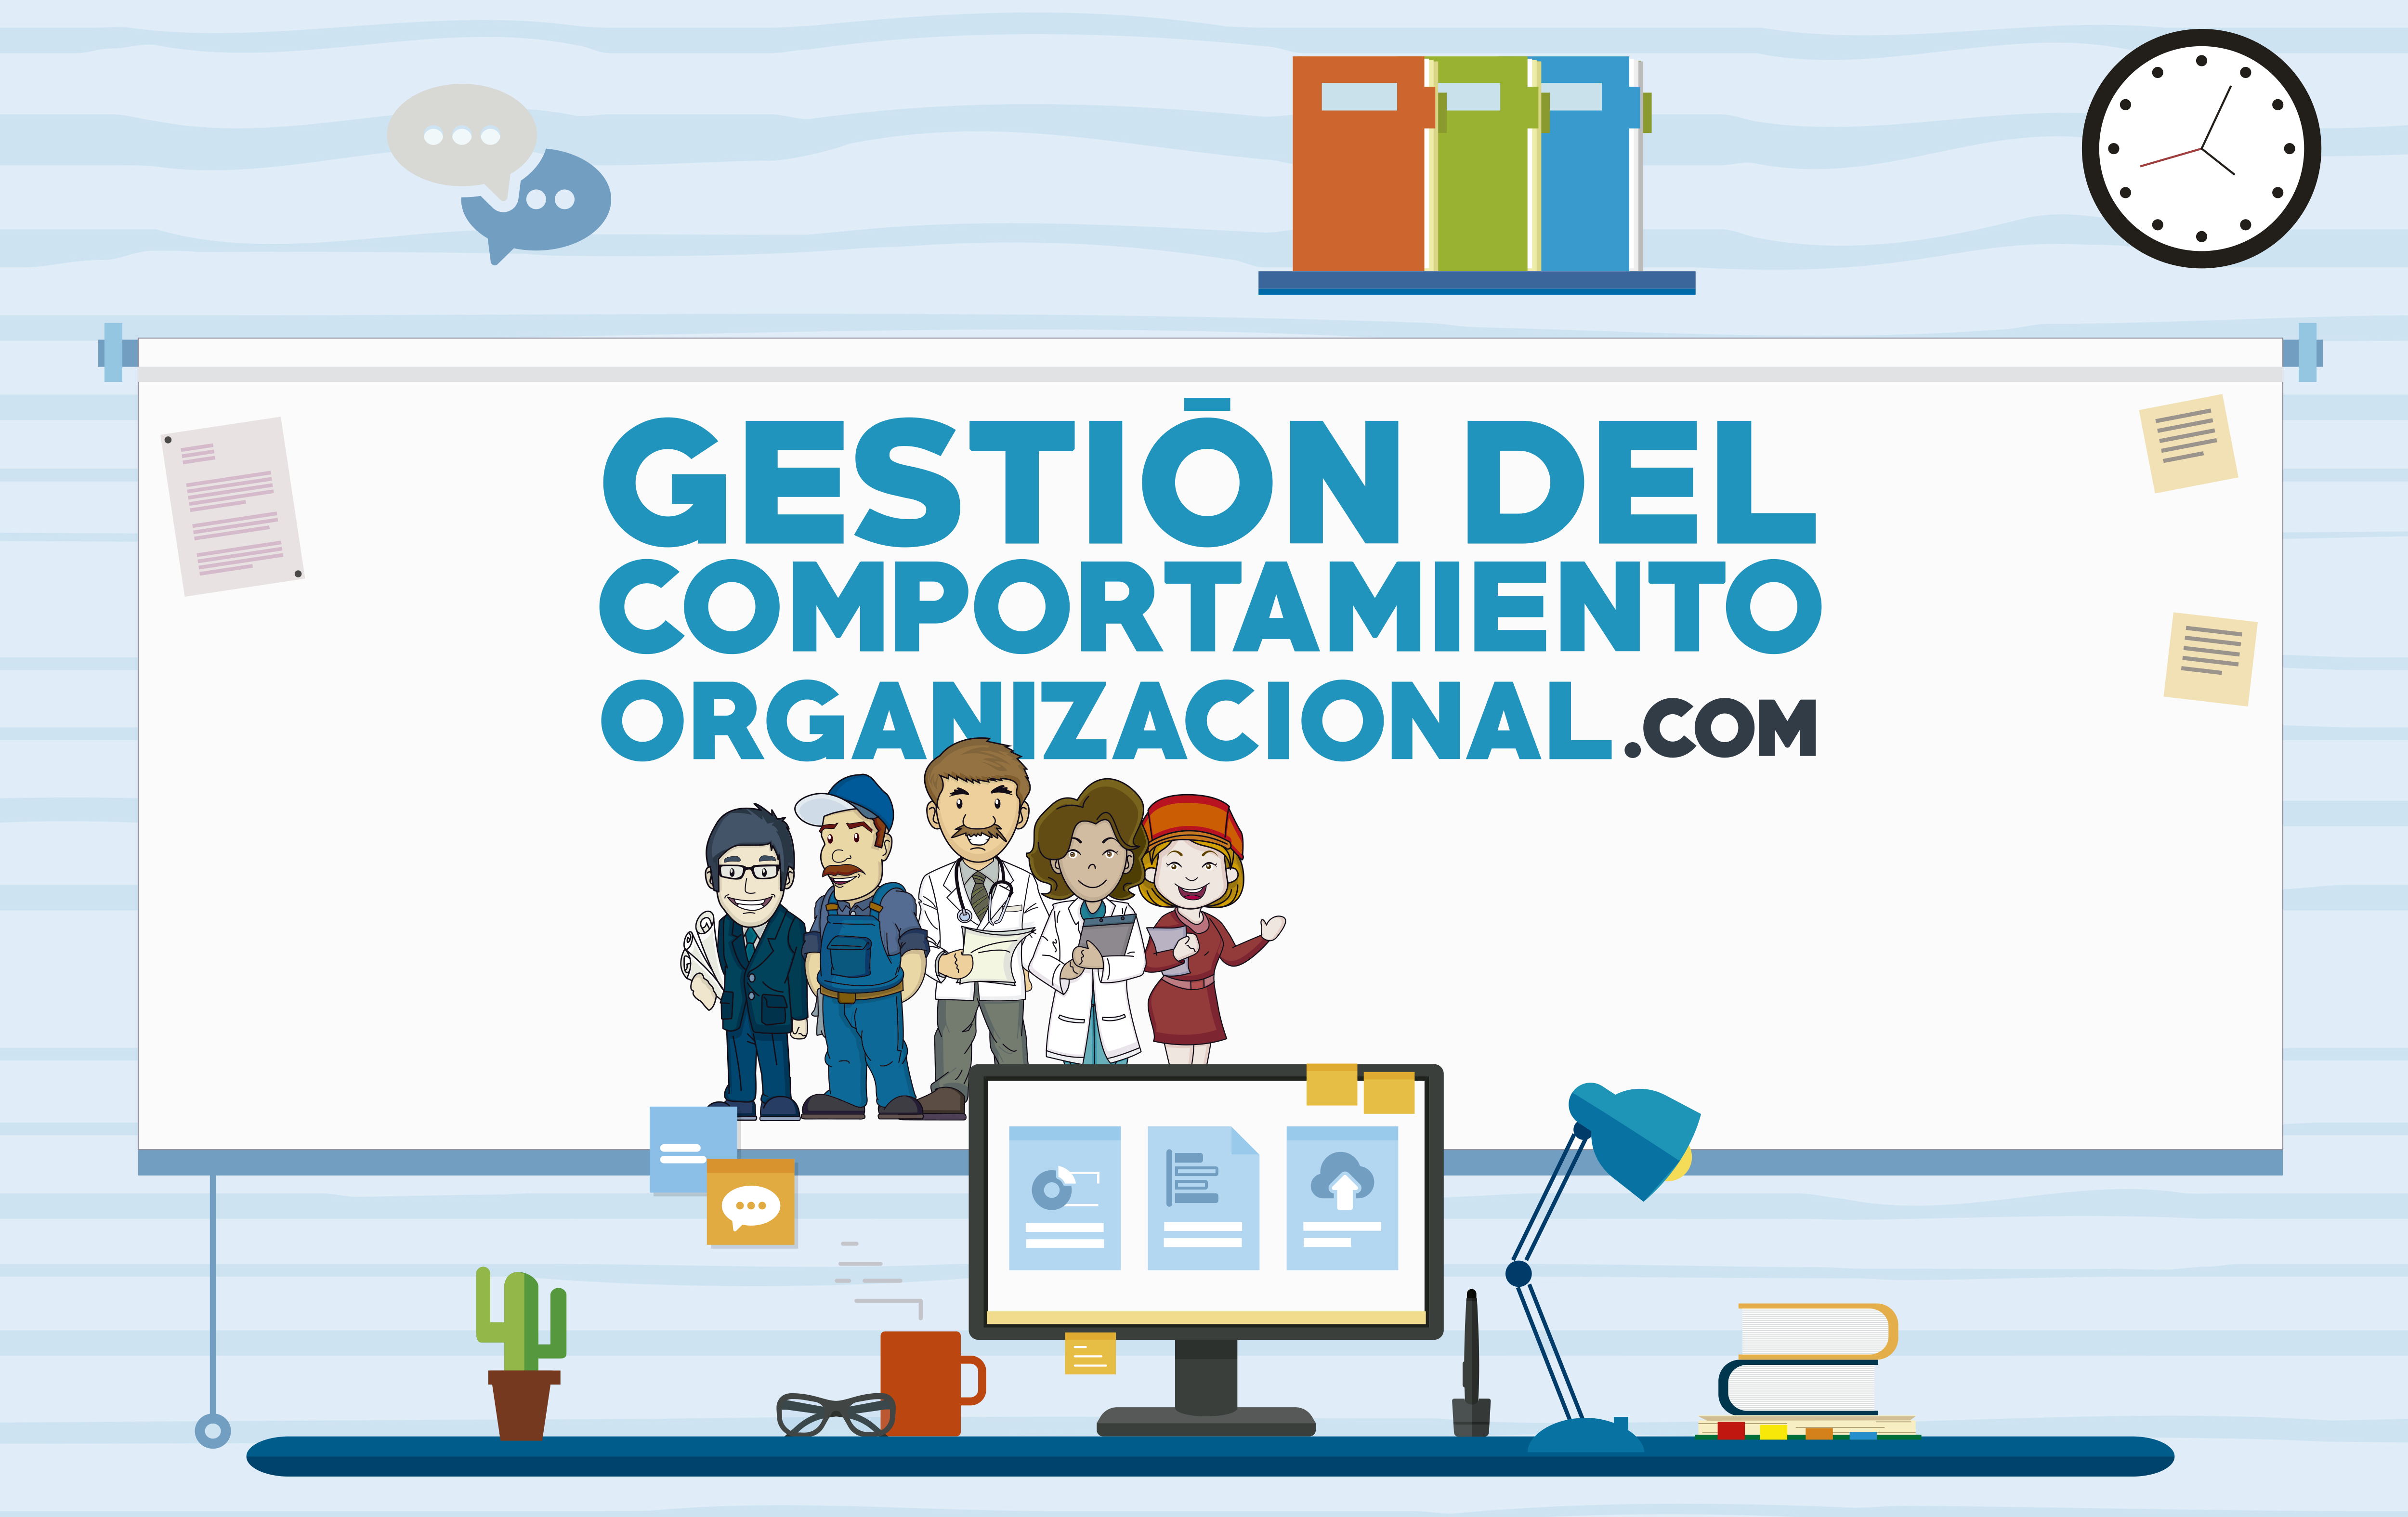 gestion_del_comportamiento_organizacional_index.png